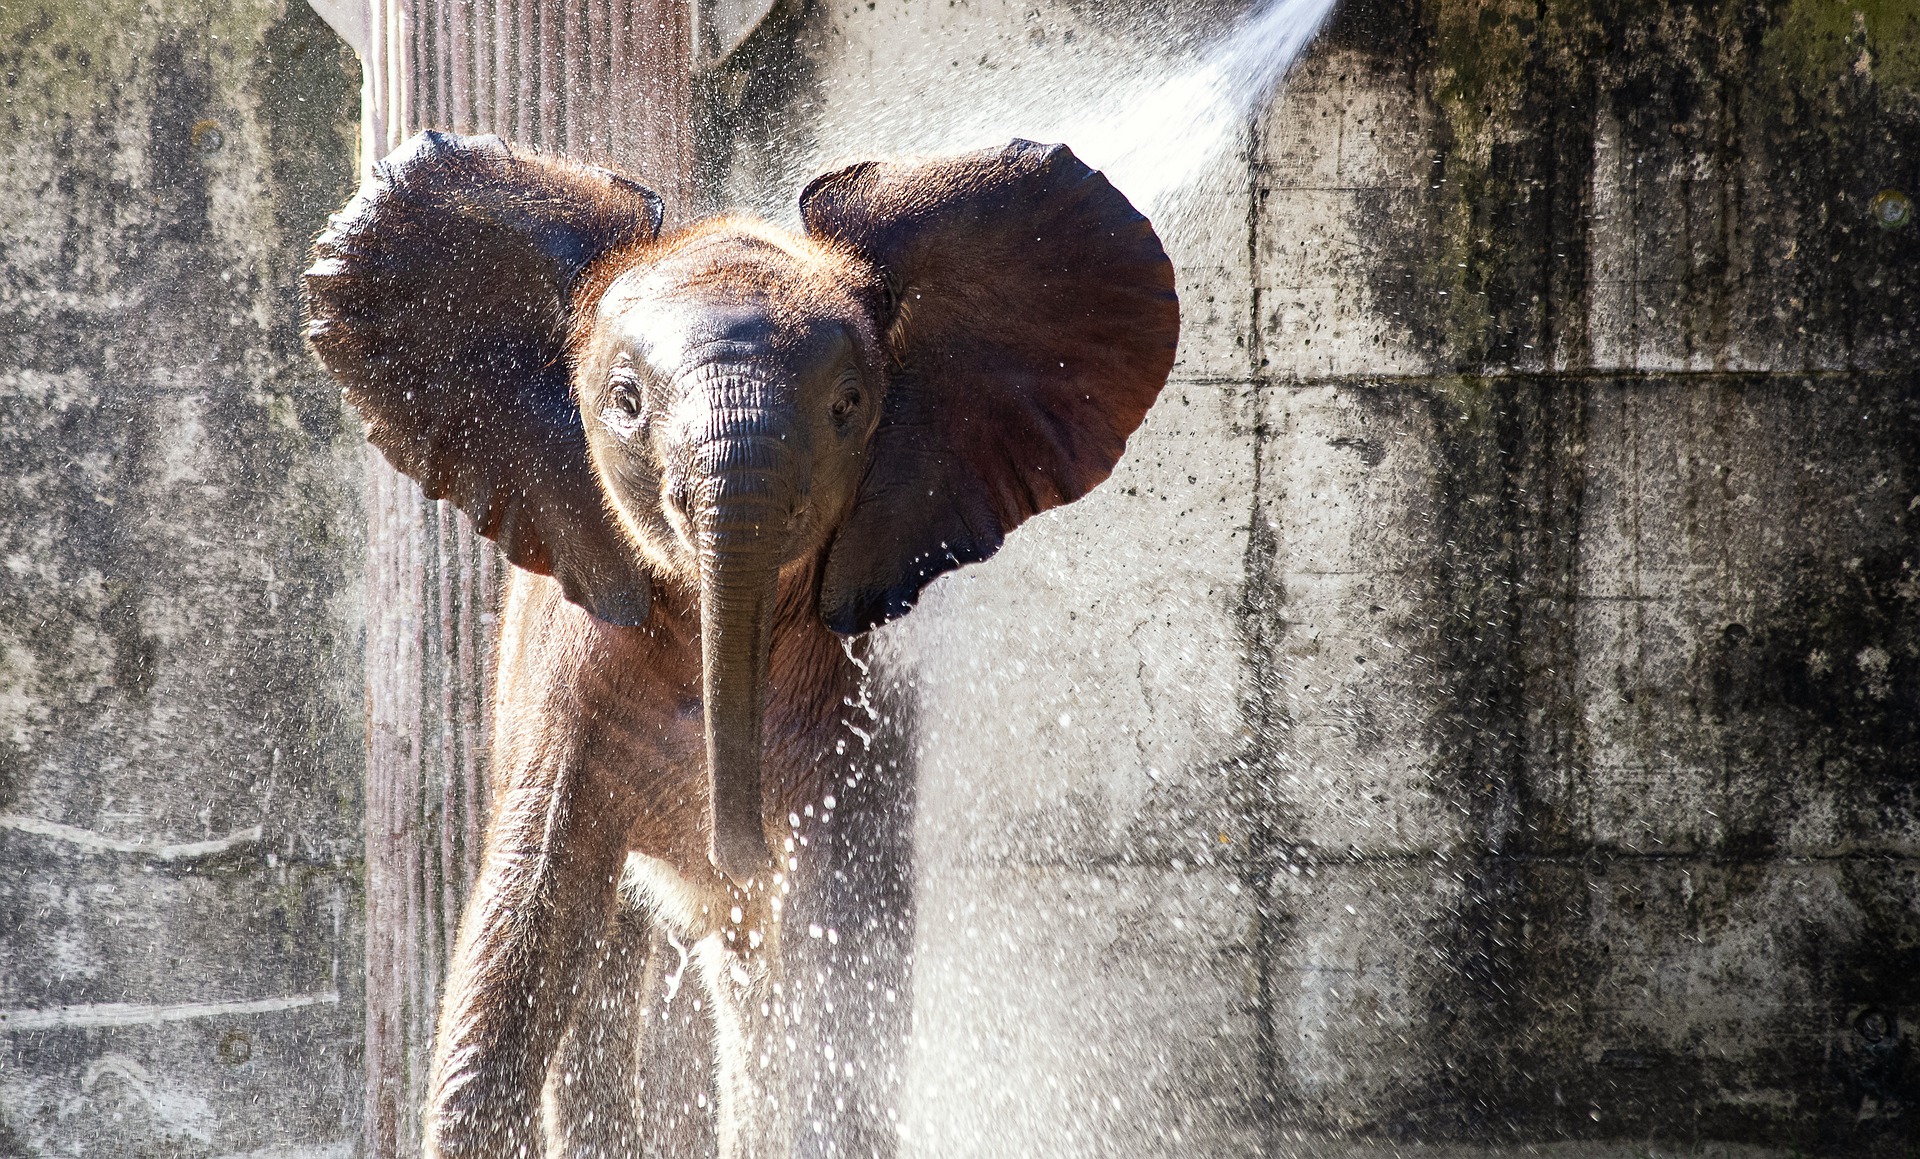 éléphant prend une douche sous l'eau courante